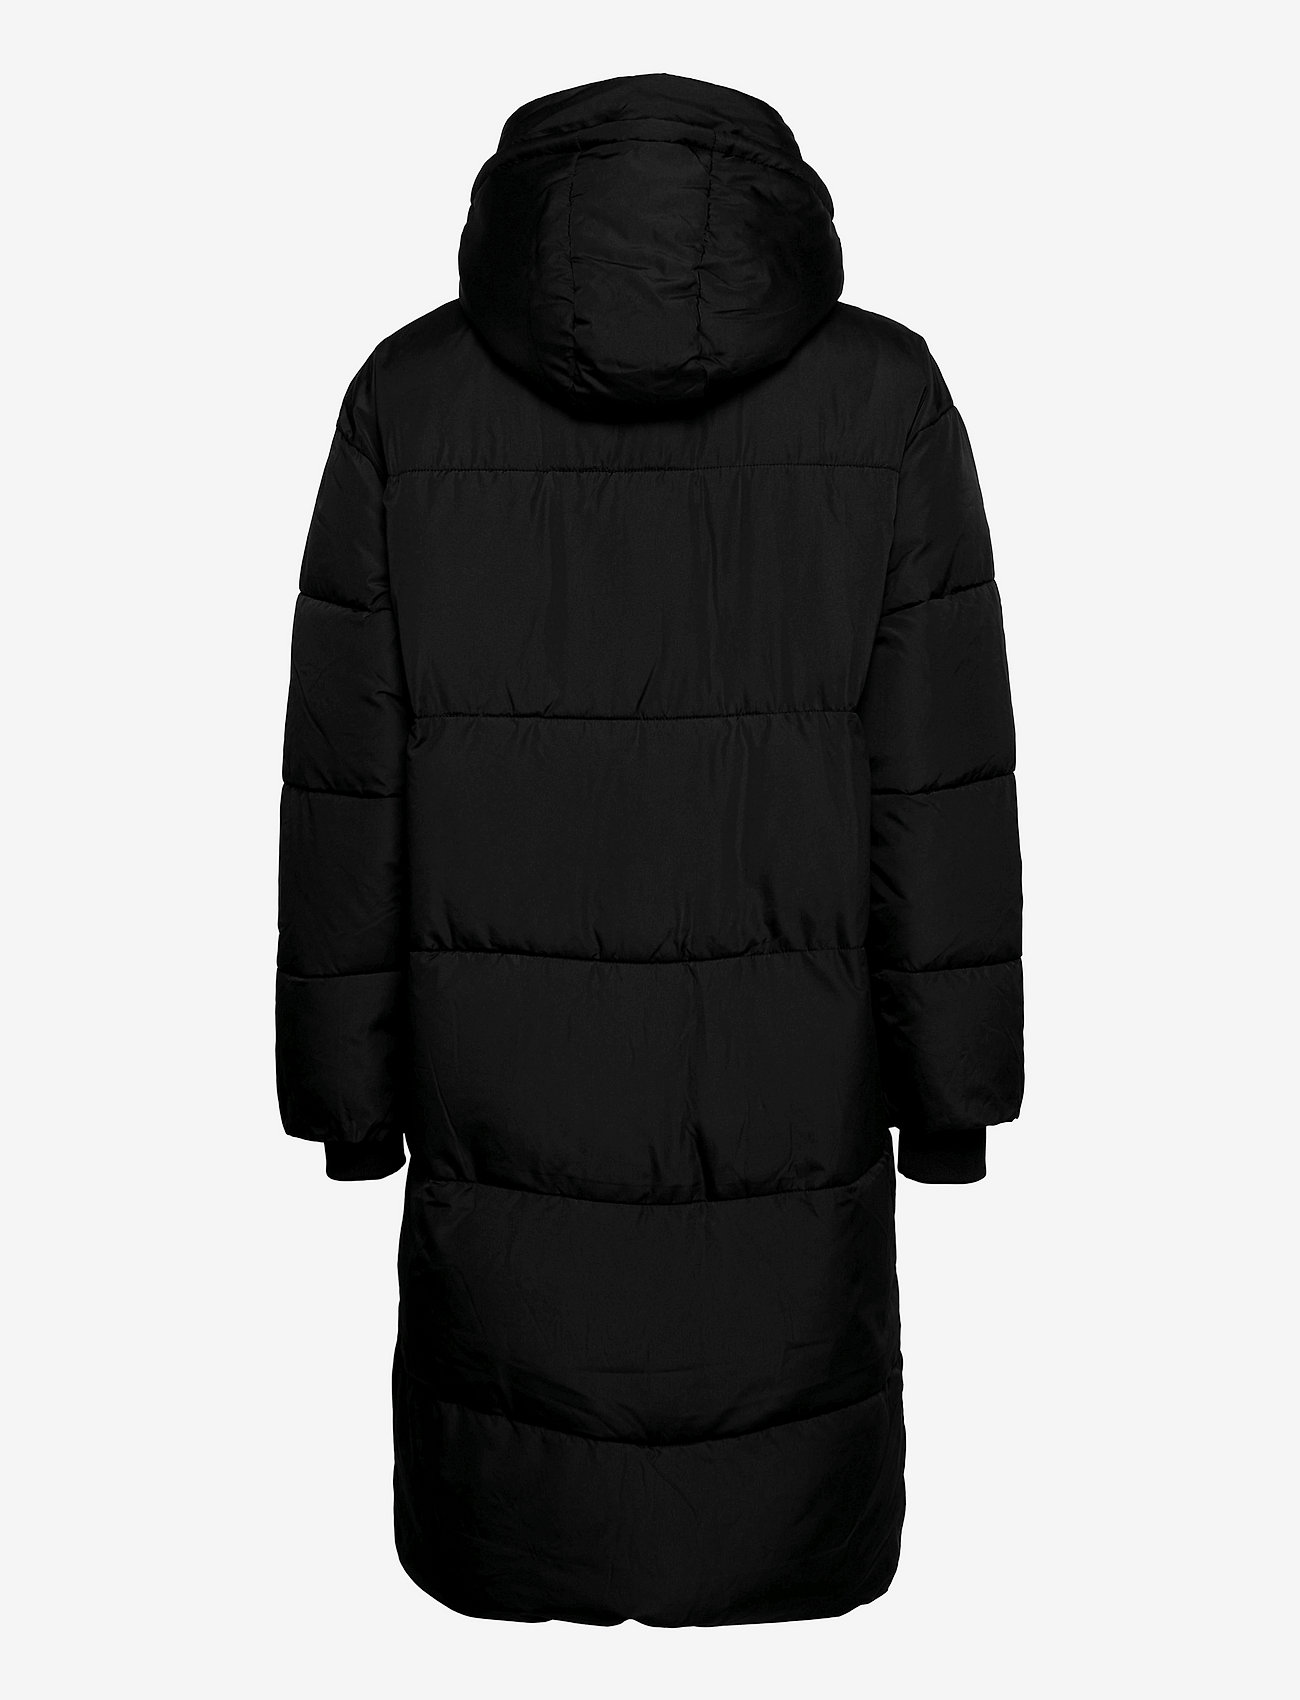 Soft Rebels - SRInga Puffer Coat - winter jackets - black - 1